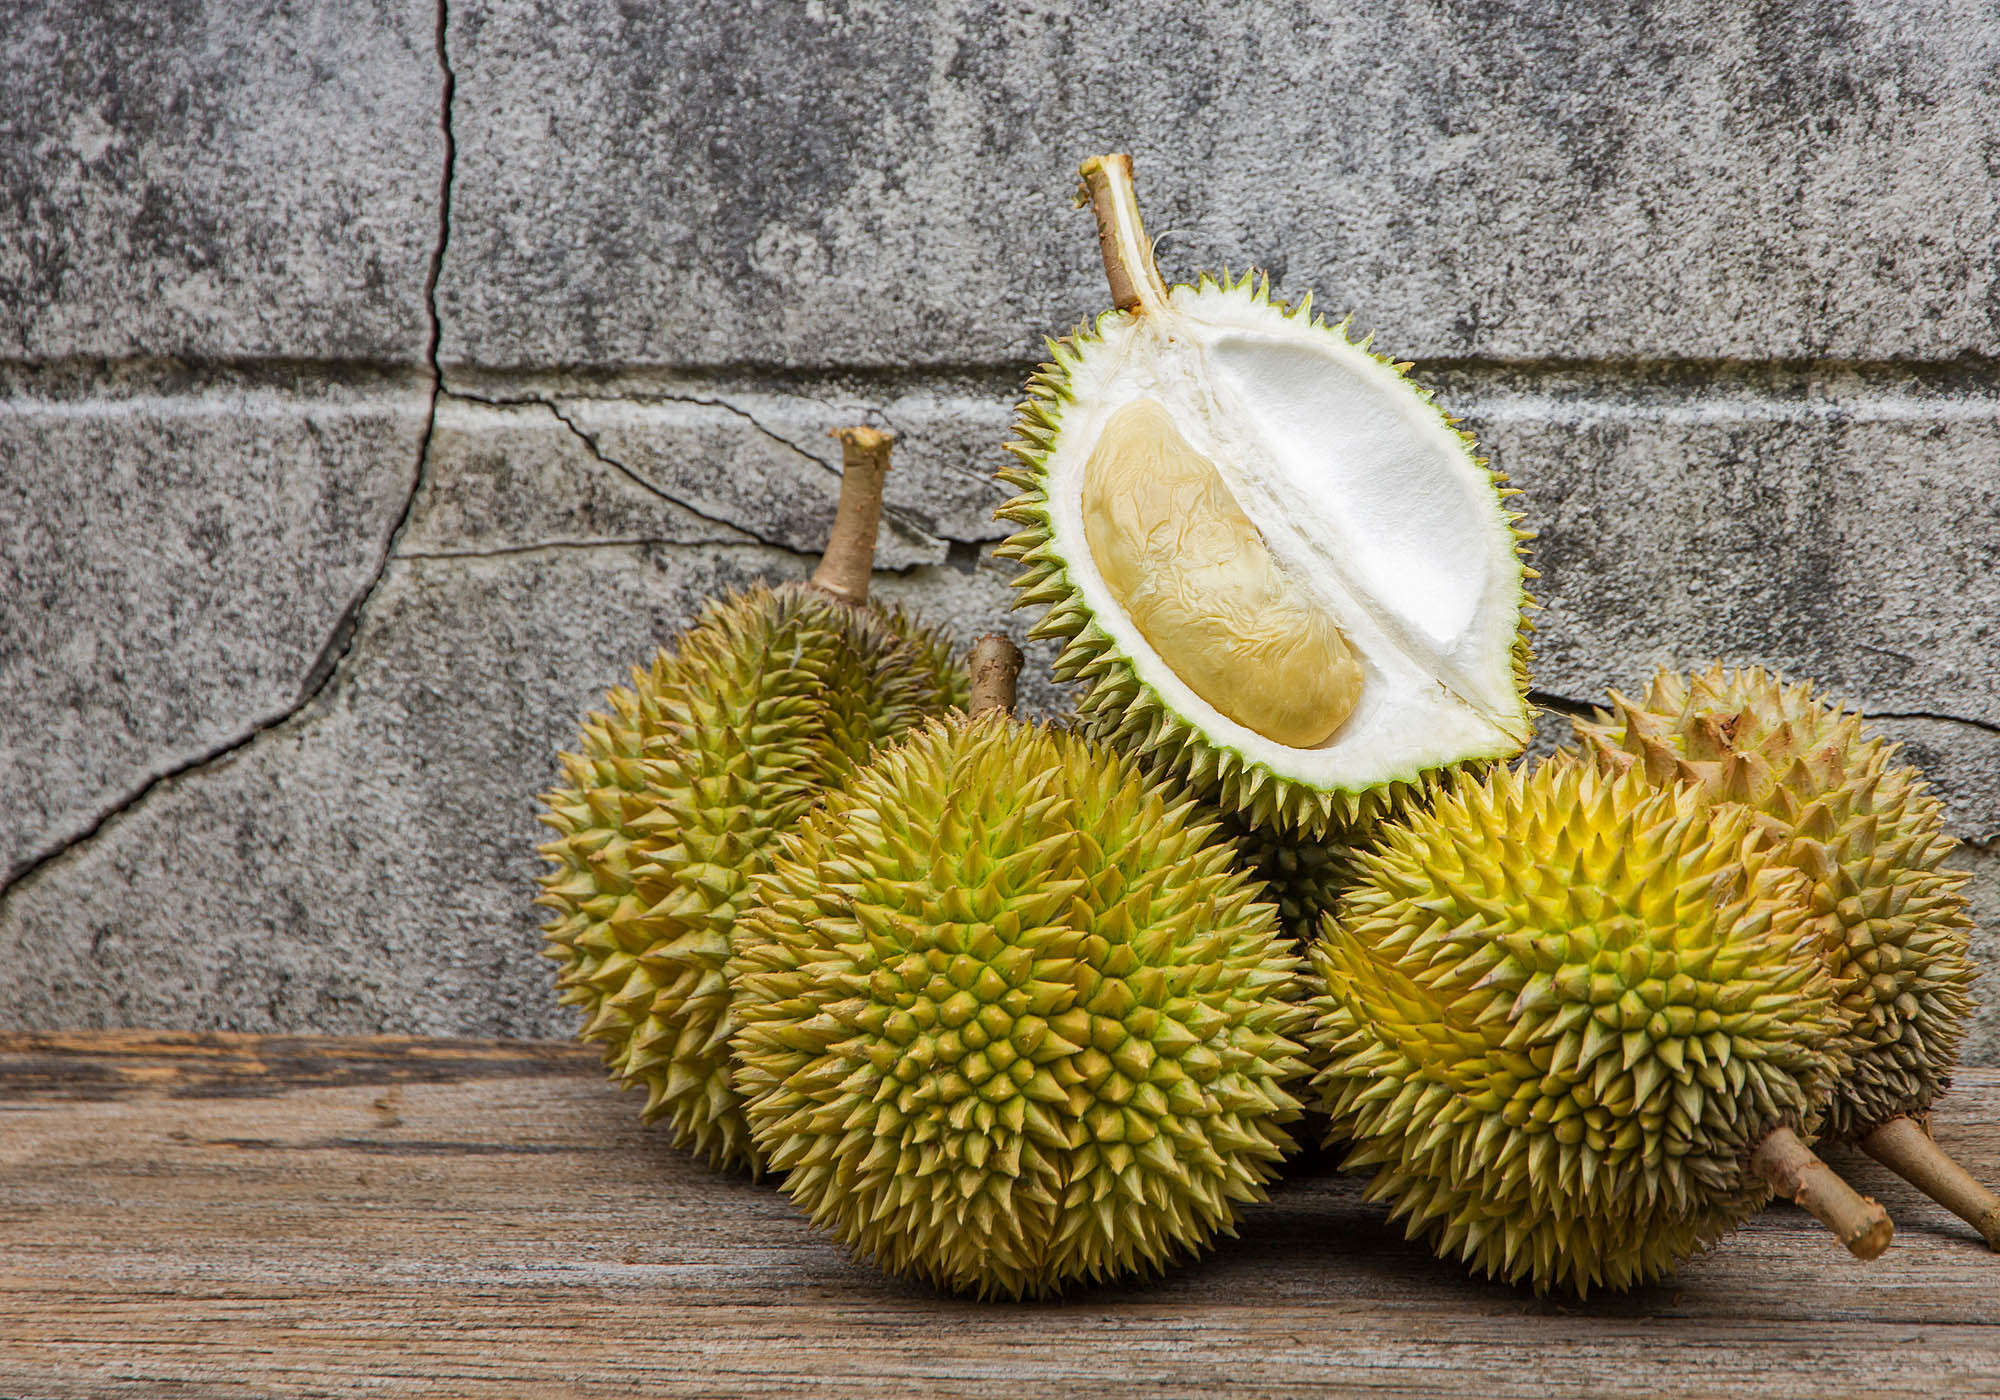 Pot femeile însărcinate să mănânce durian?